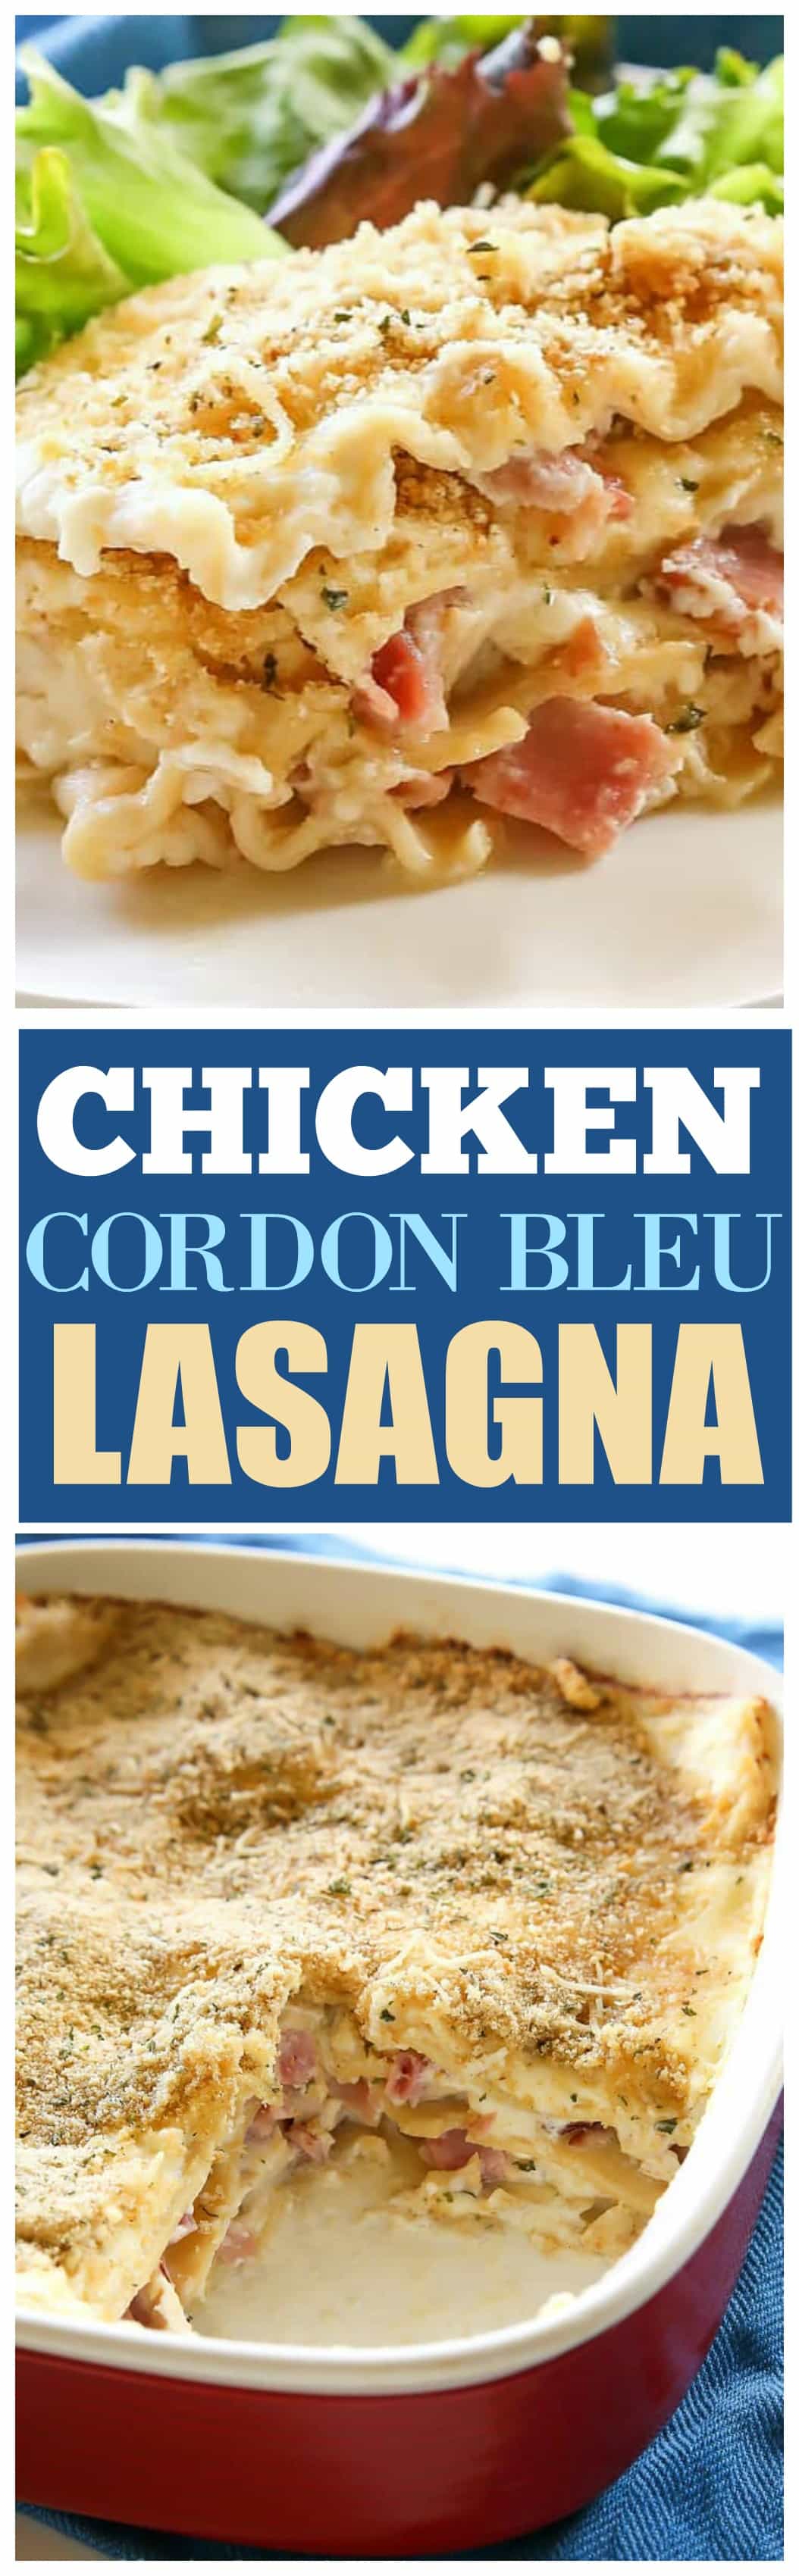 Frango Cordon Bleu Lasagna - comida caseira no seu melhor.  Camadas de presunto, frango e molho branco cremoso fazem um jantar saboroso.  www.a-menina-que-comeu-tudo.com